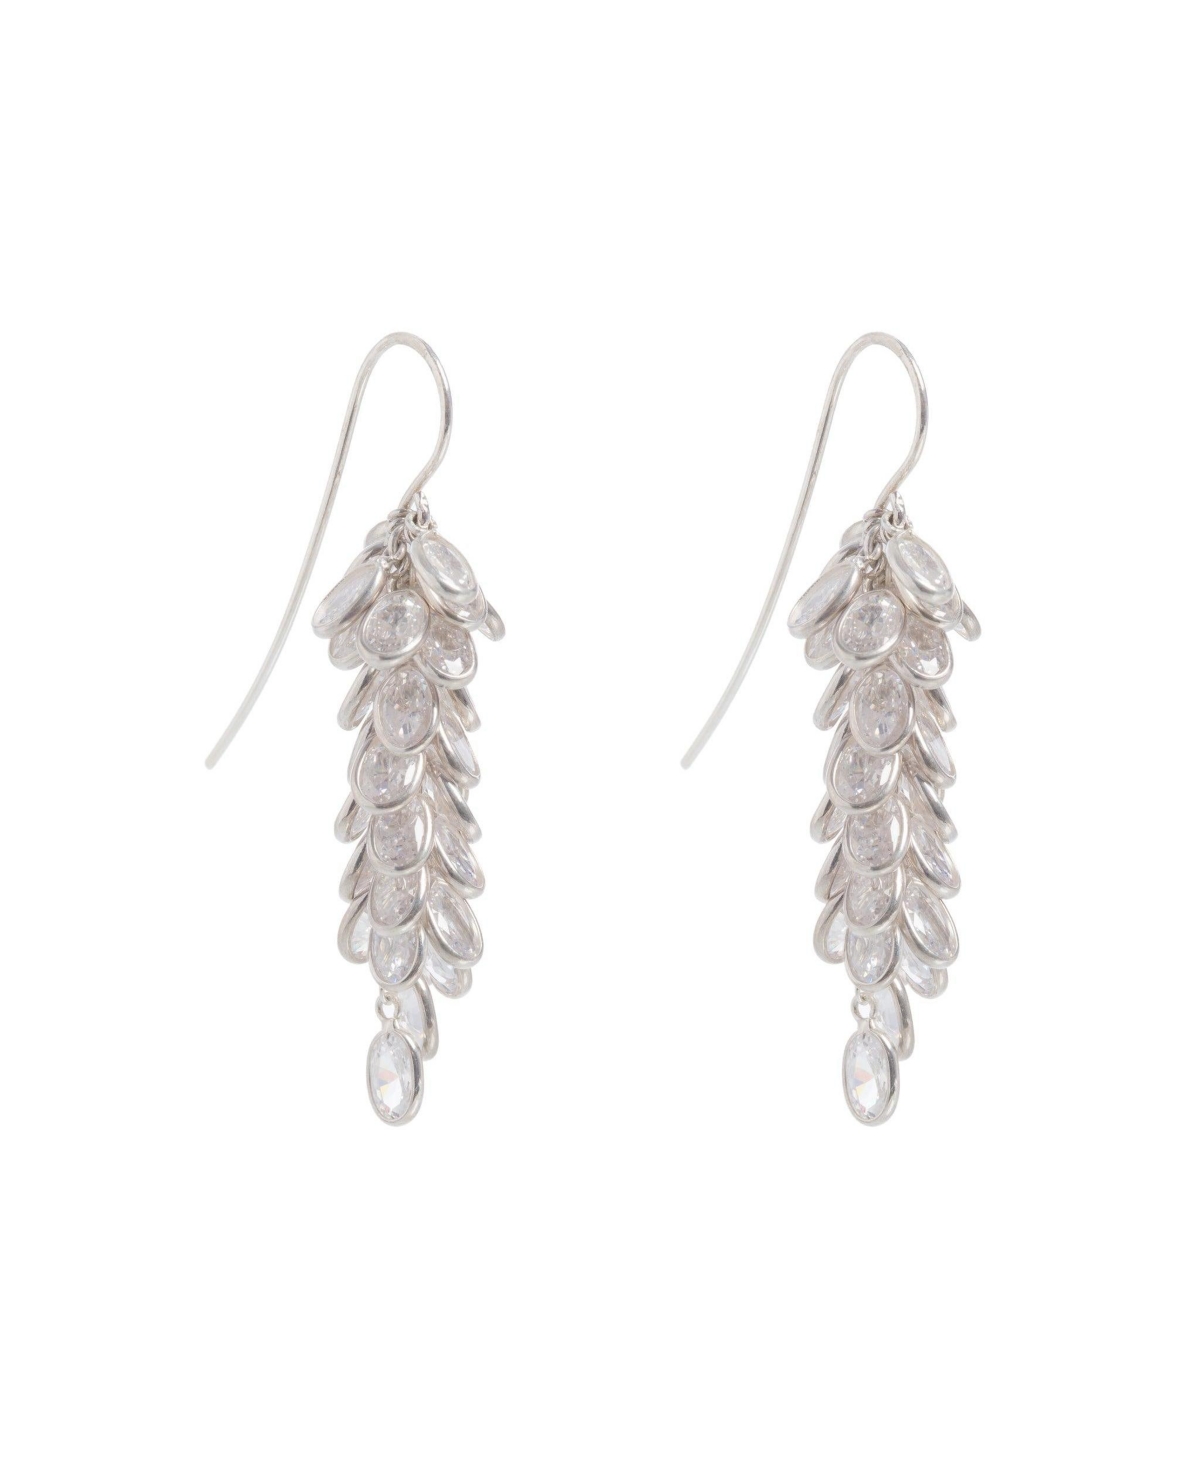 Silver Midi Crystal Drops Earrings - Silver